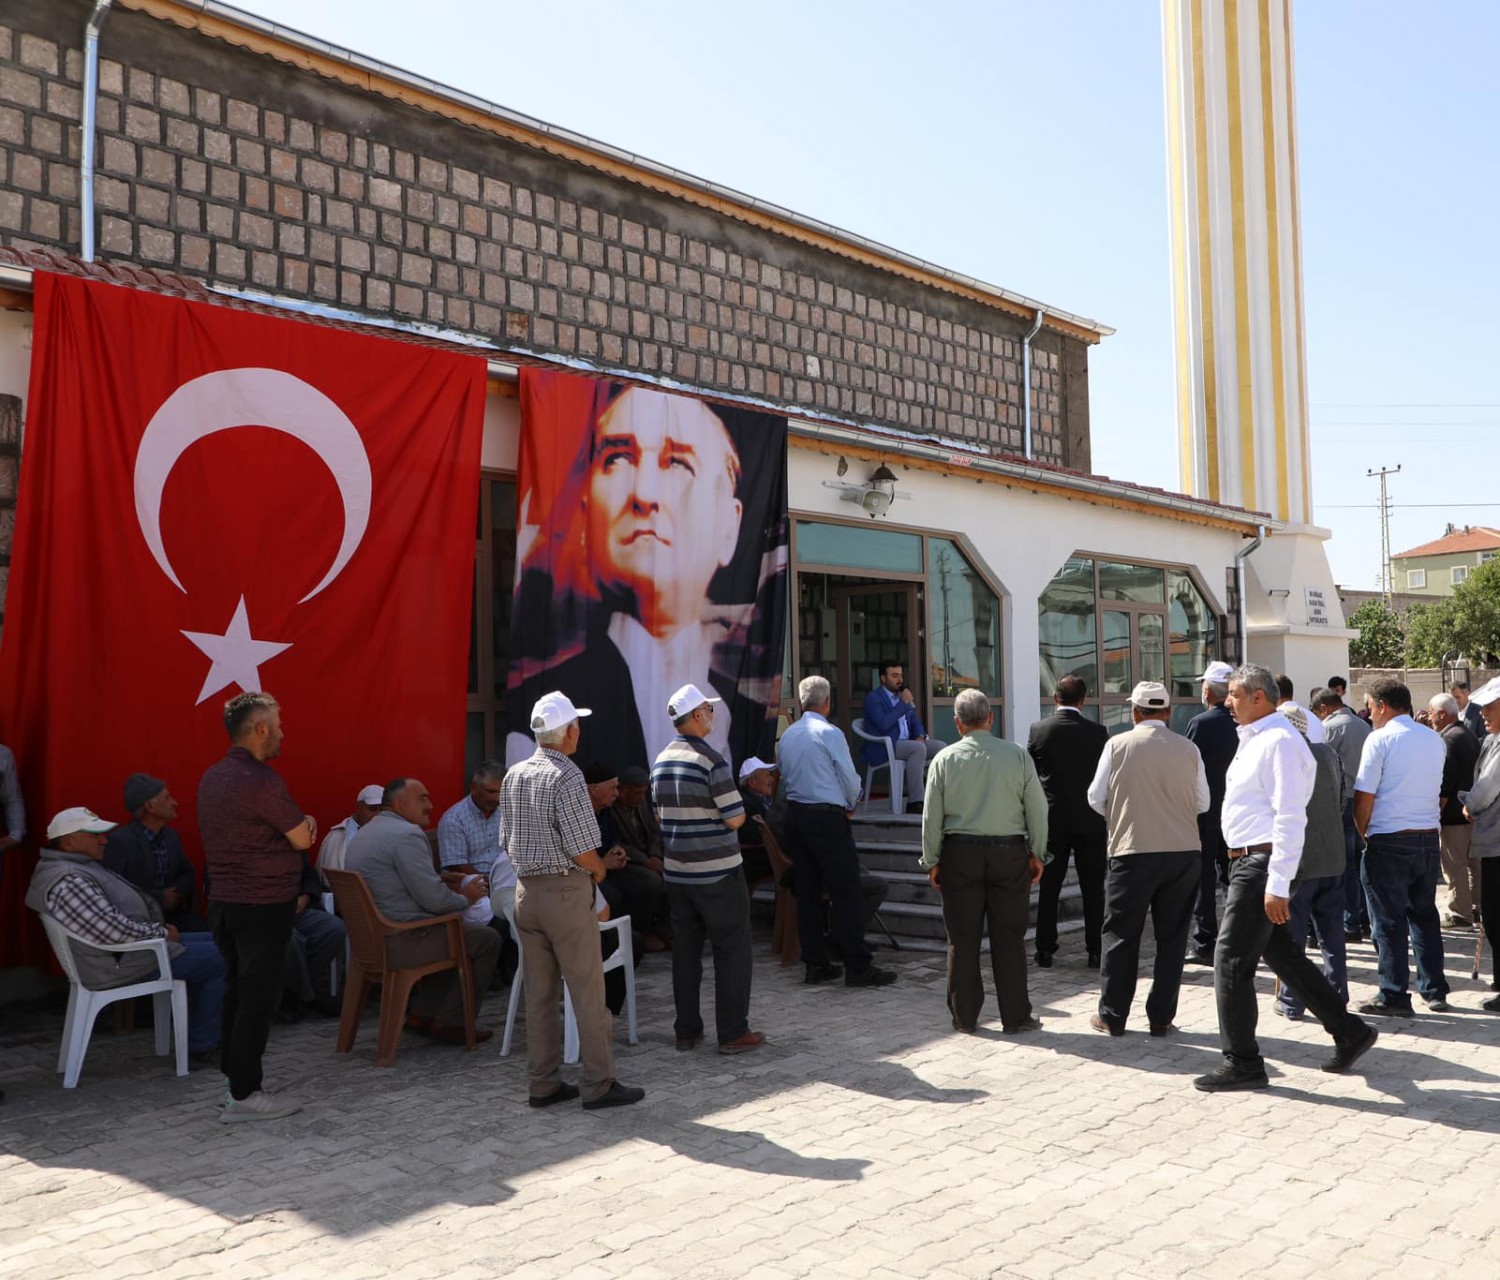 Belediye Başkanımız Av. Mustafa İlmek Tahirini mahallesine yapılan caminin açılışı törenine katıldı.